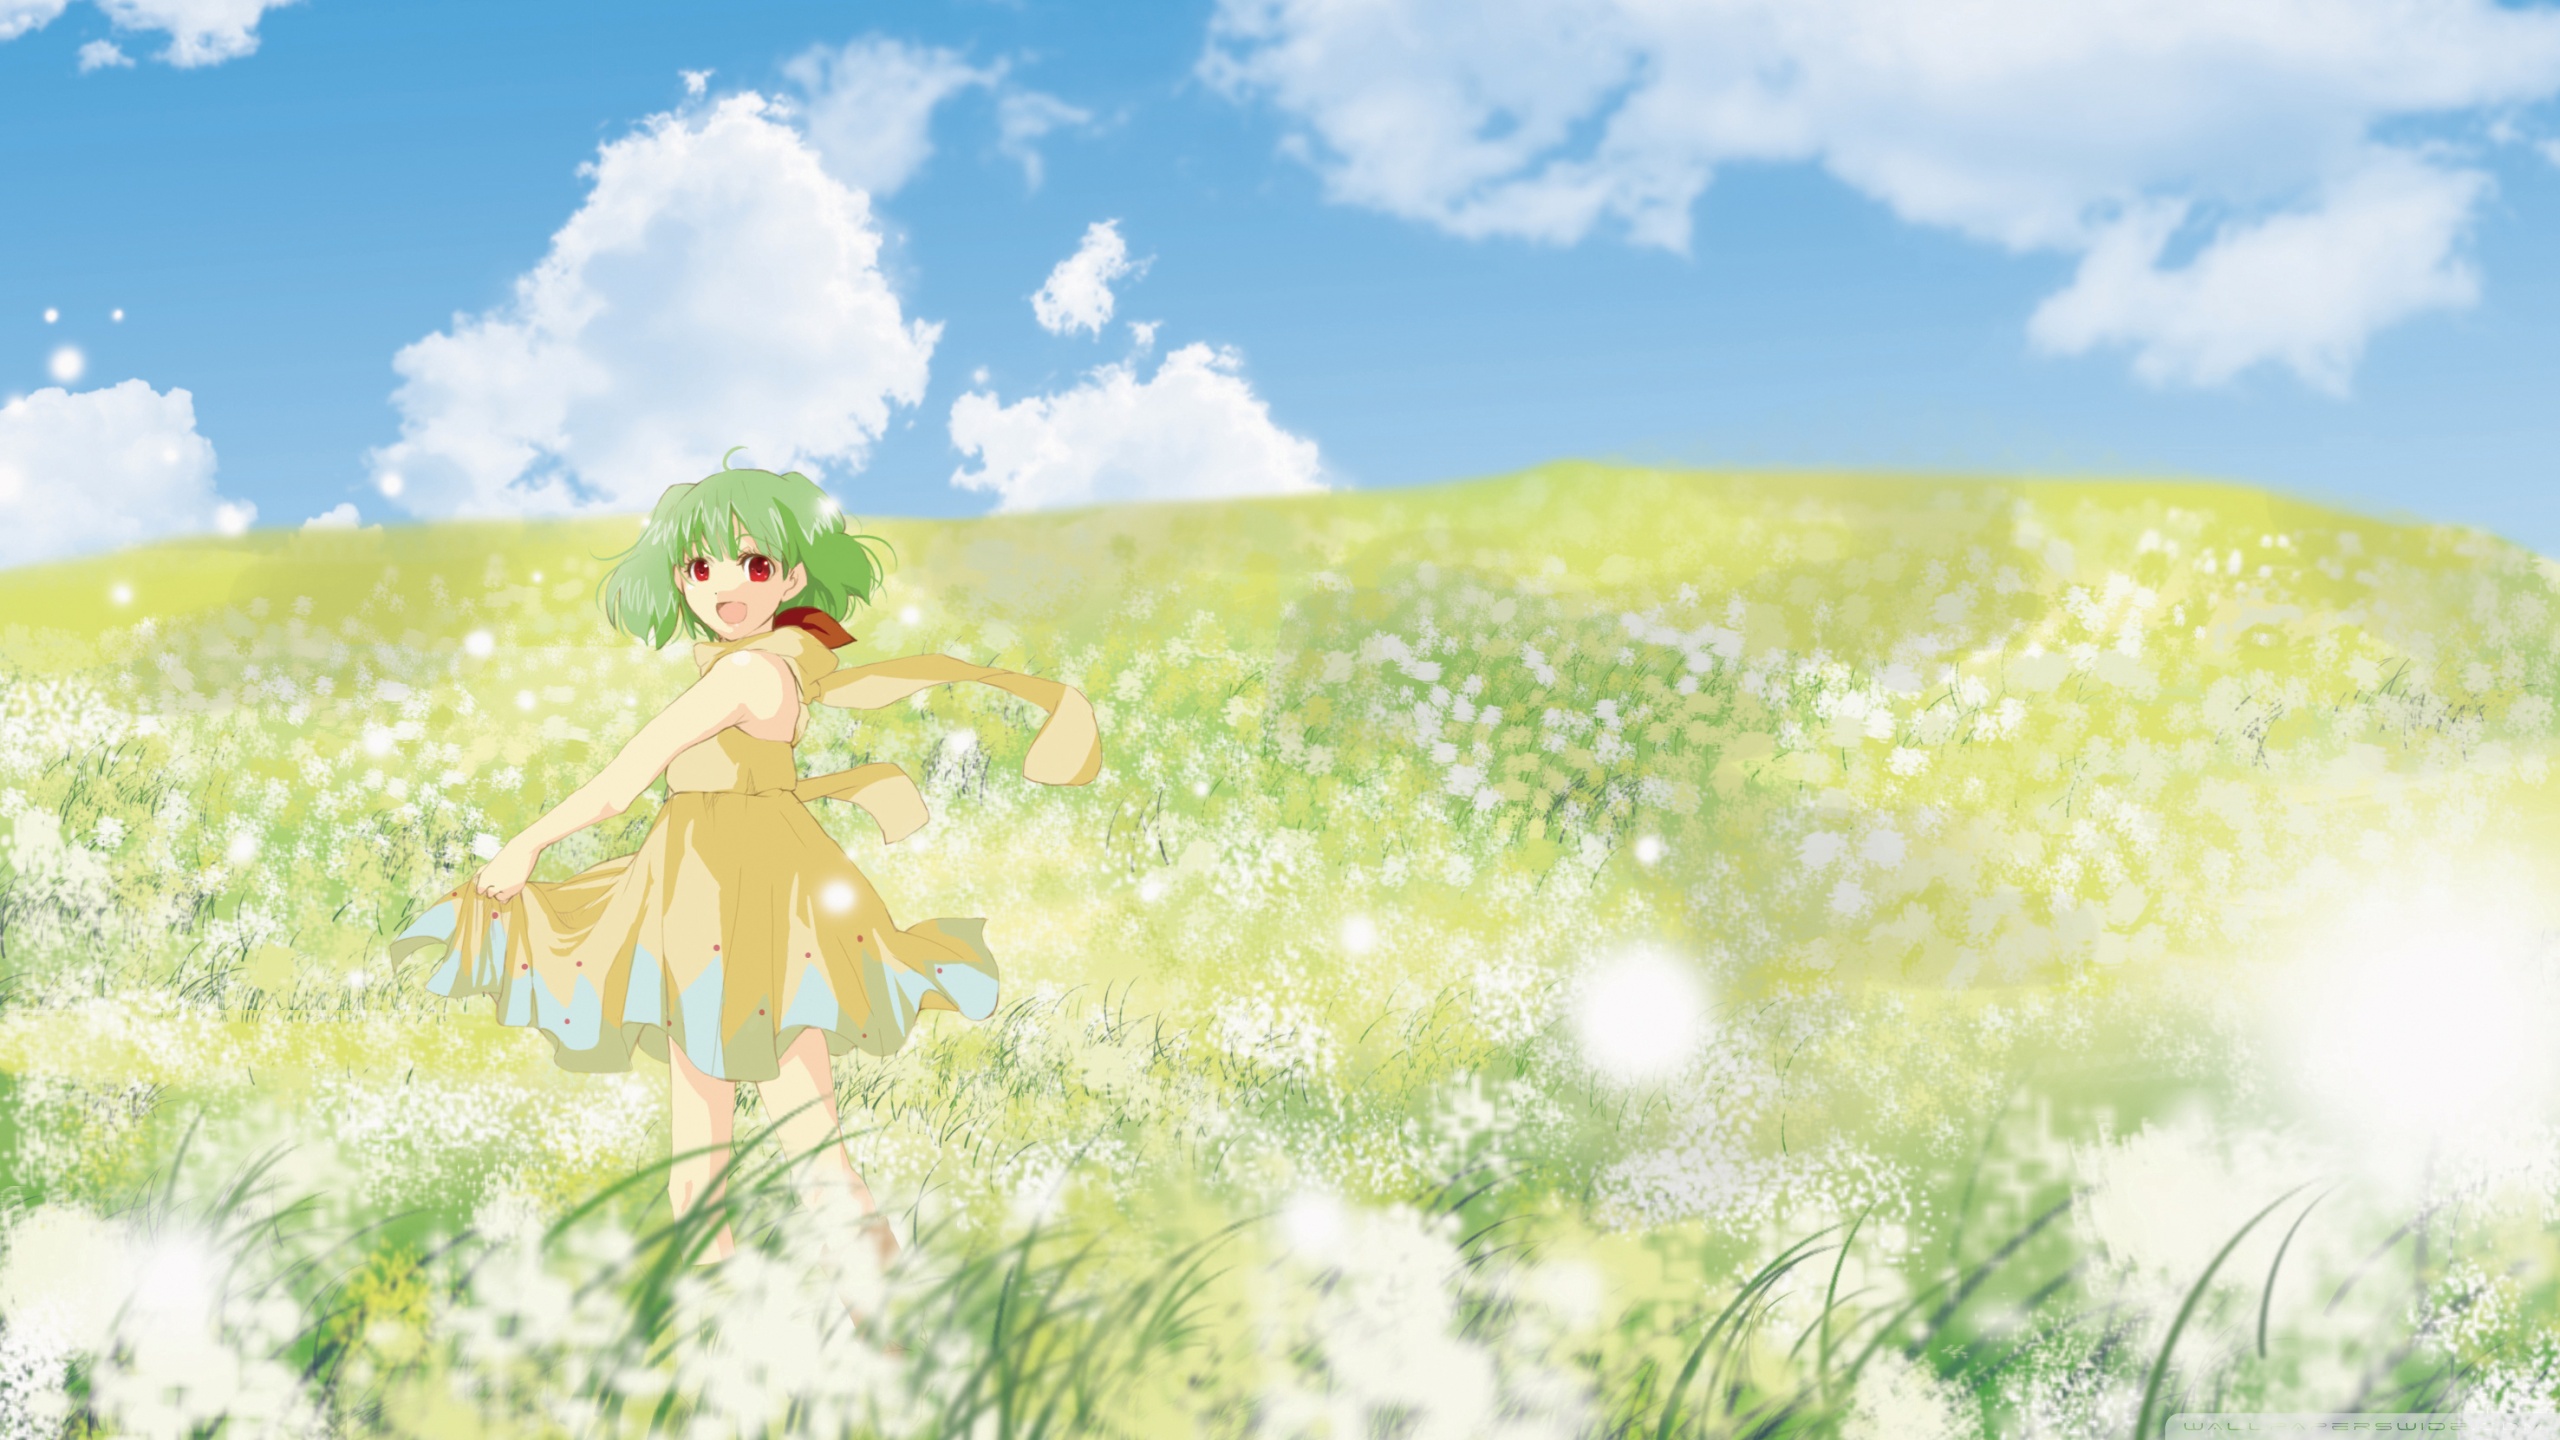 Anime Girl In Flower Field Ultra HD Desktop Background Wallpaper for 4K UHD TV, Tablet